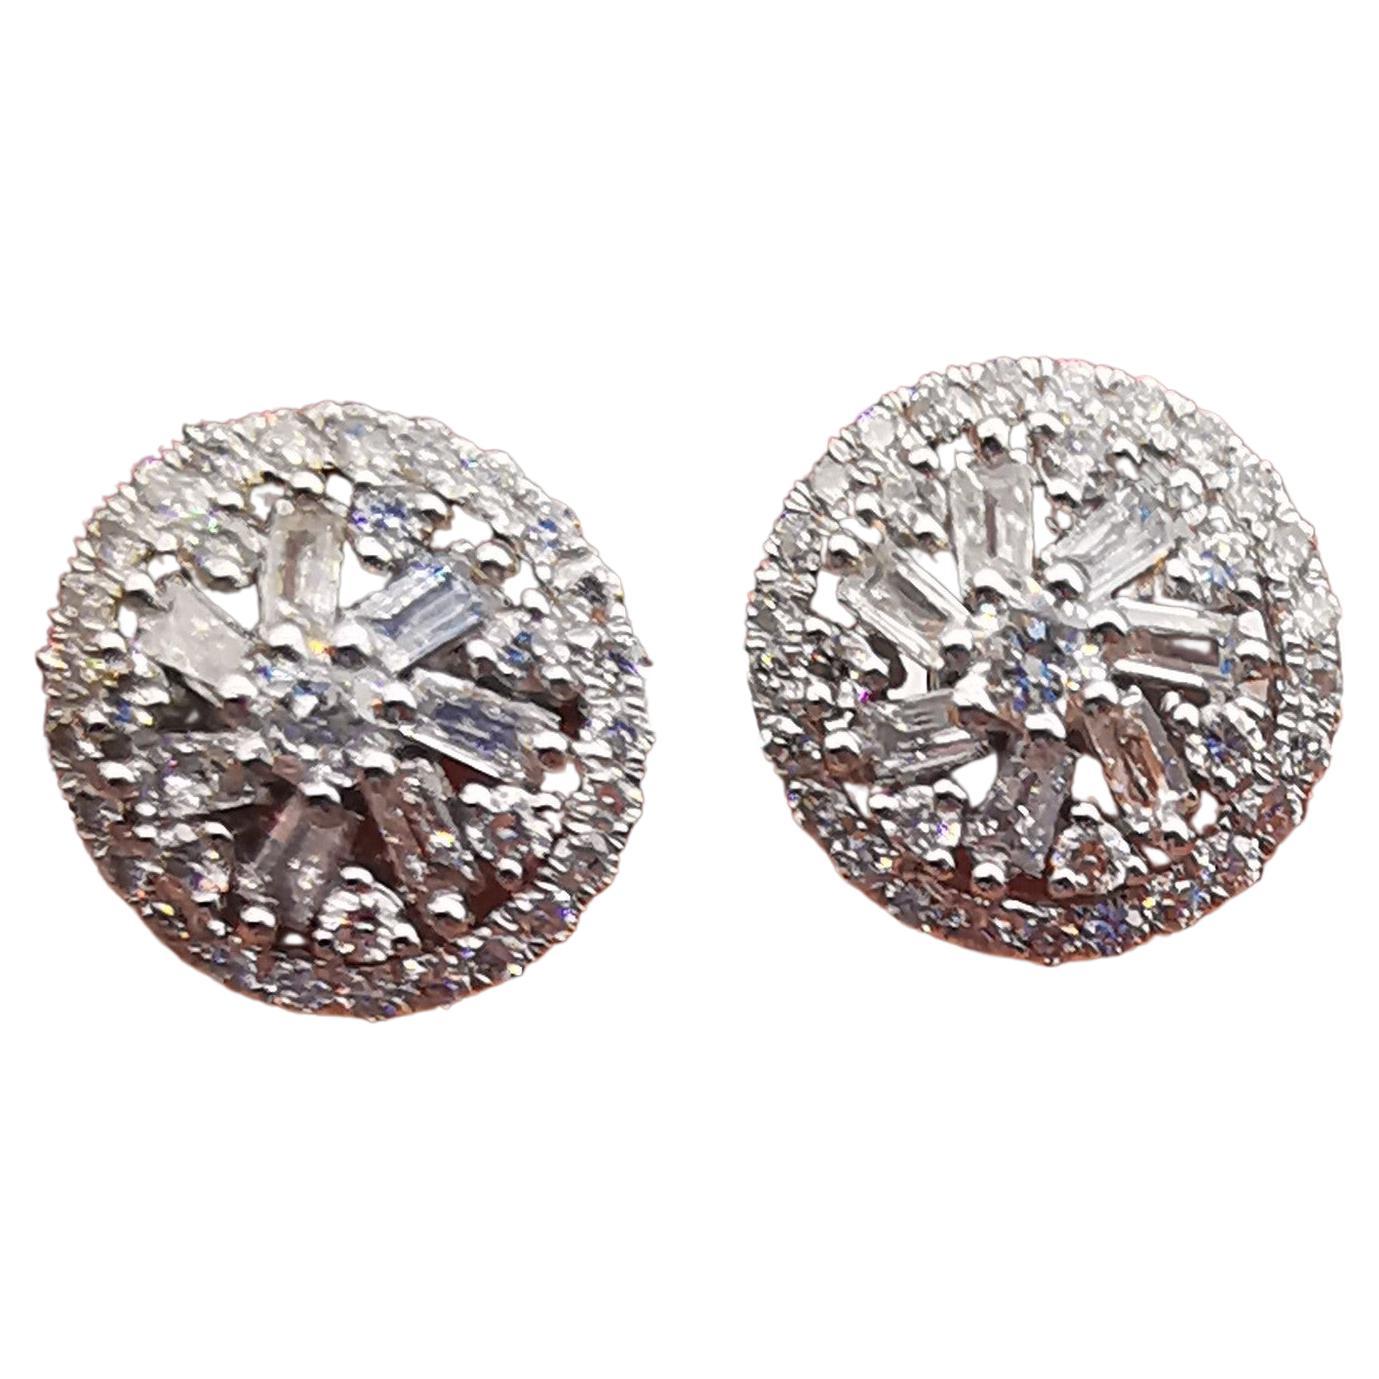 NWT 2, 779 Gorgeous 18KT Magnificent Stud Baguette Trillion Diamond Earrings For Sale